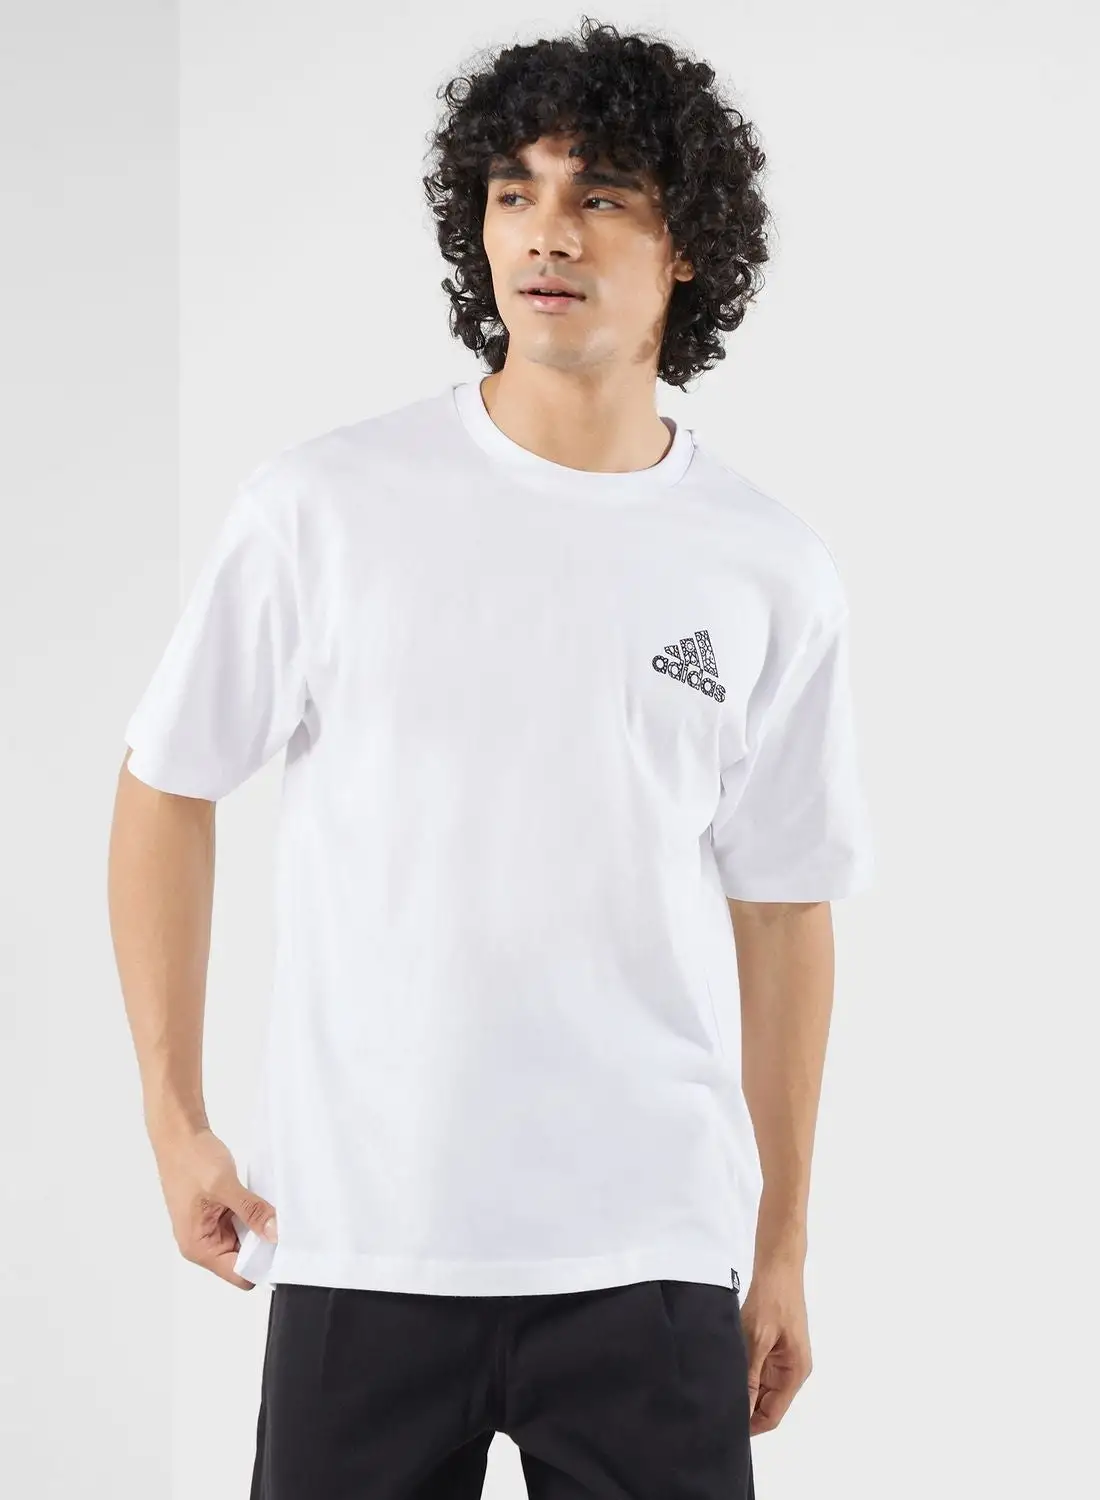 Adidas Dubai Arab T-Shirt